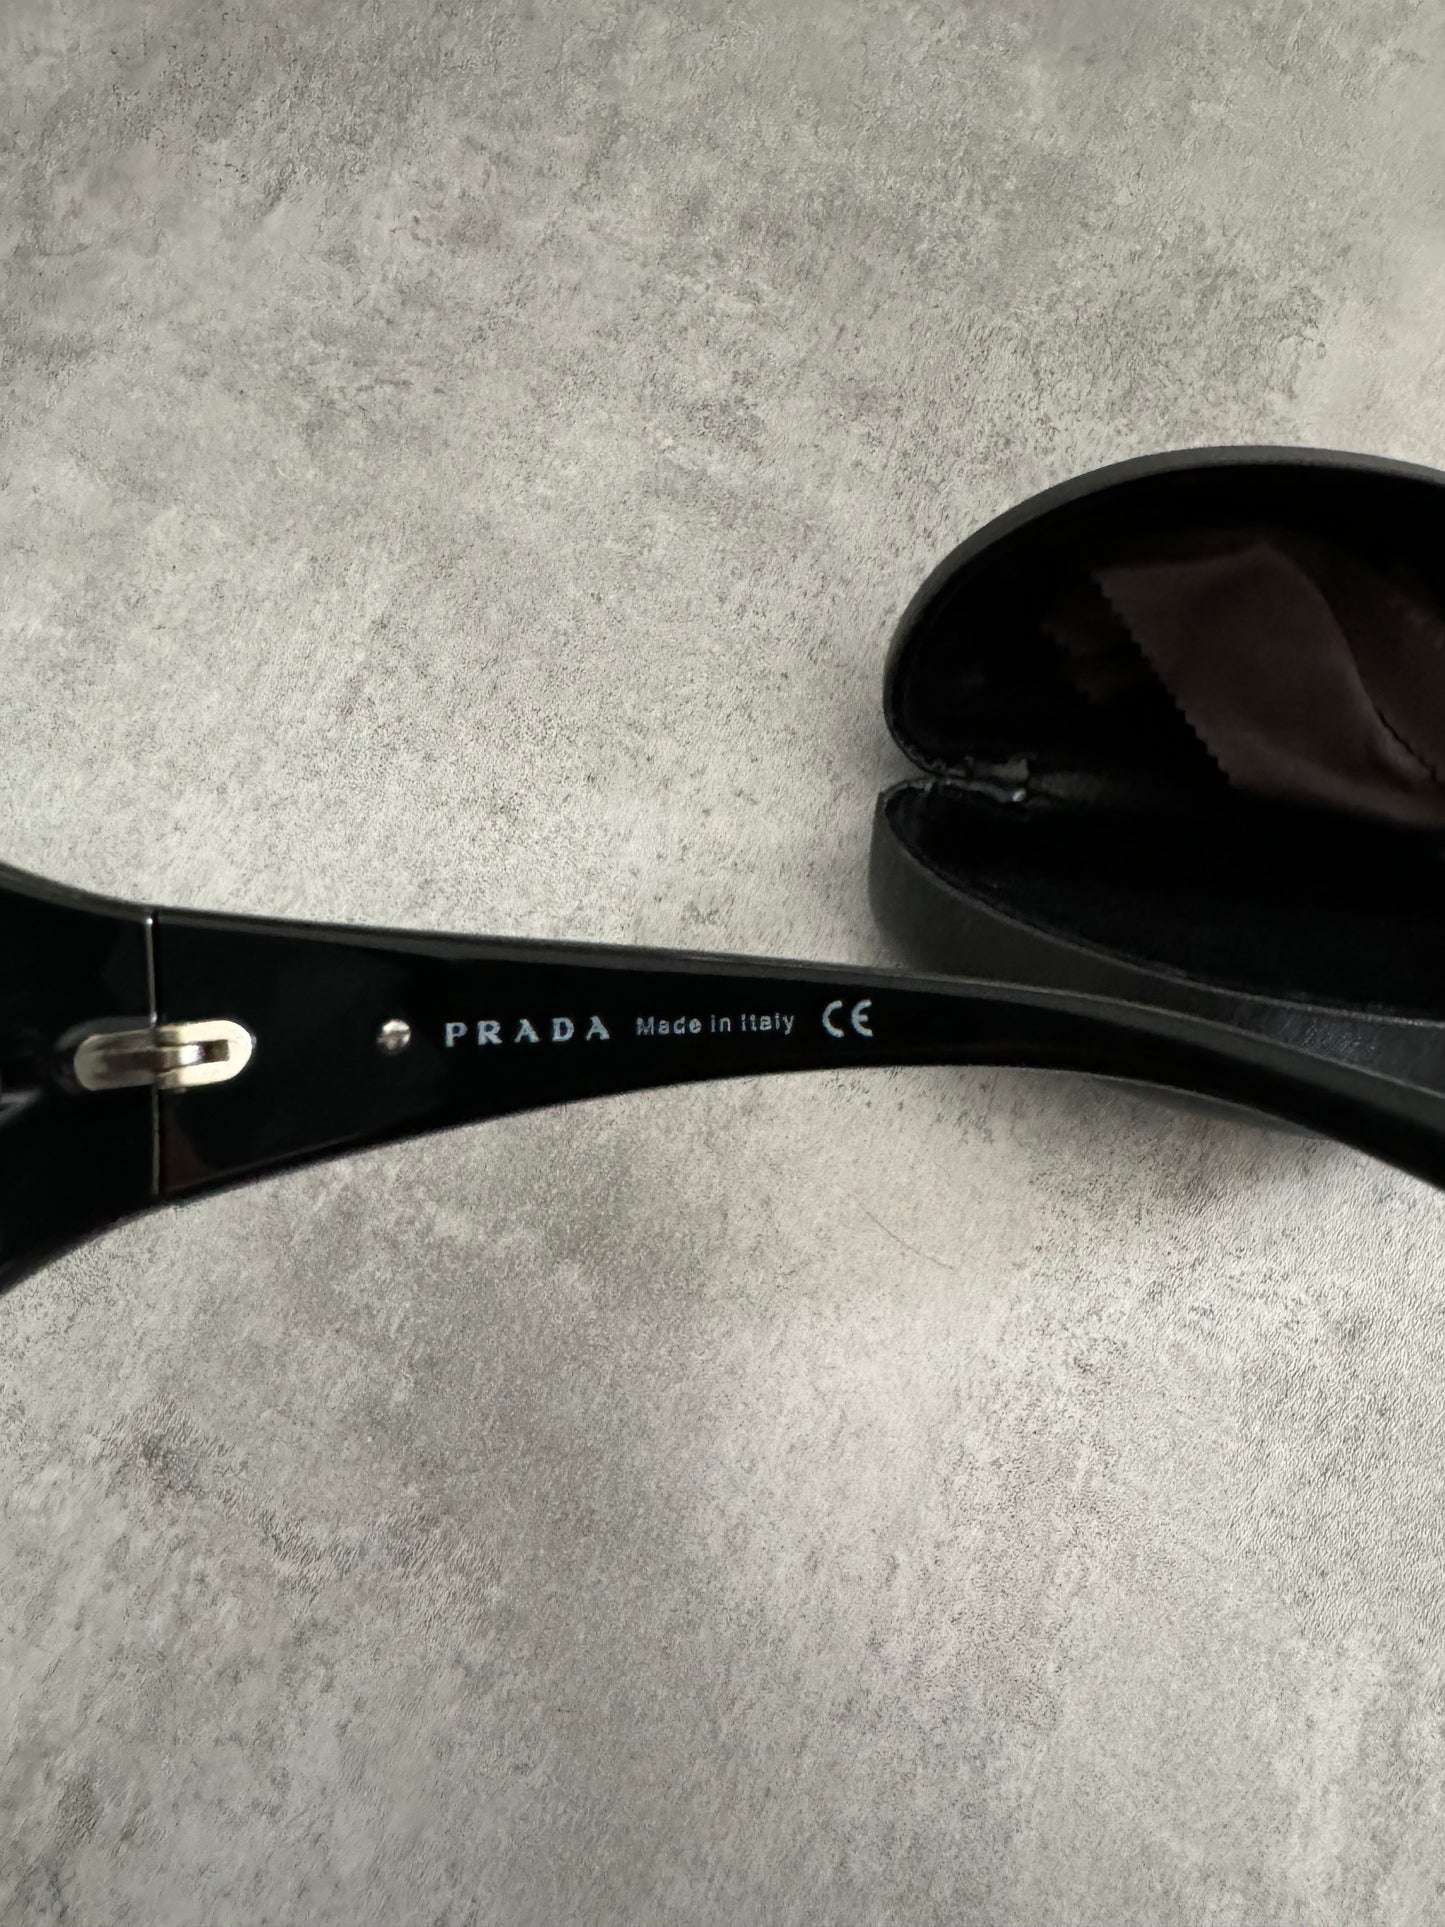 2000s Prada Pure Black Sunglasses (OS) - 6